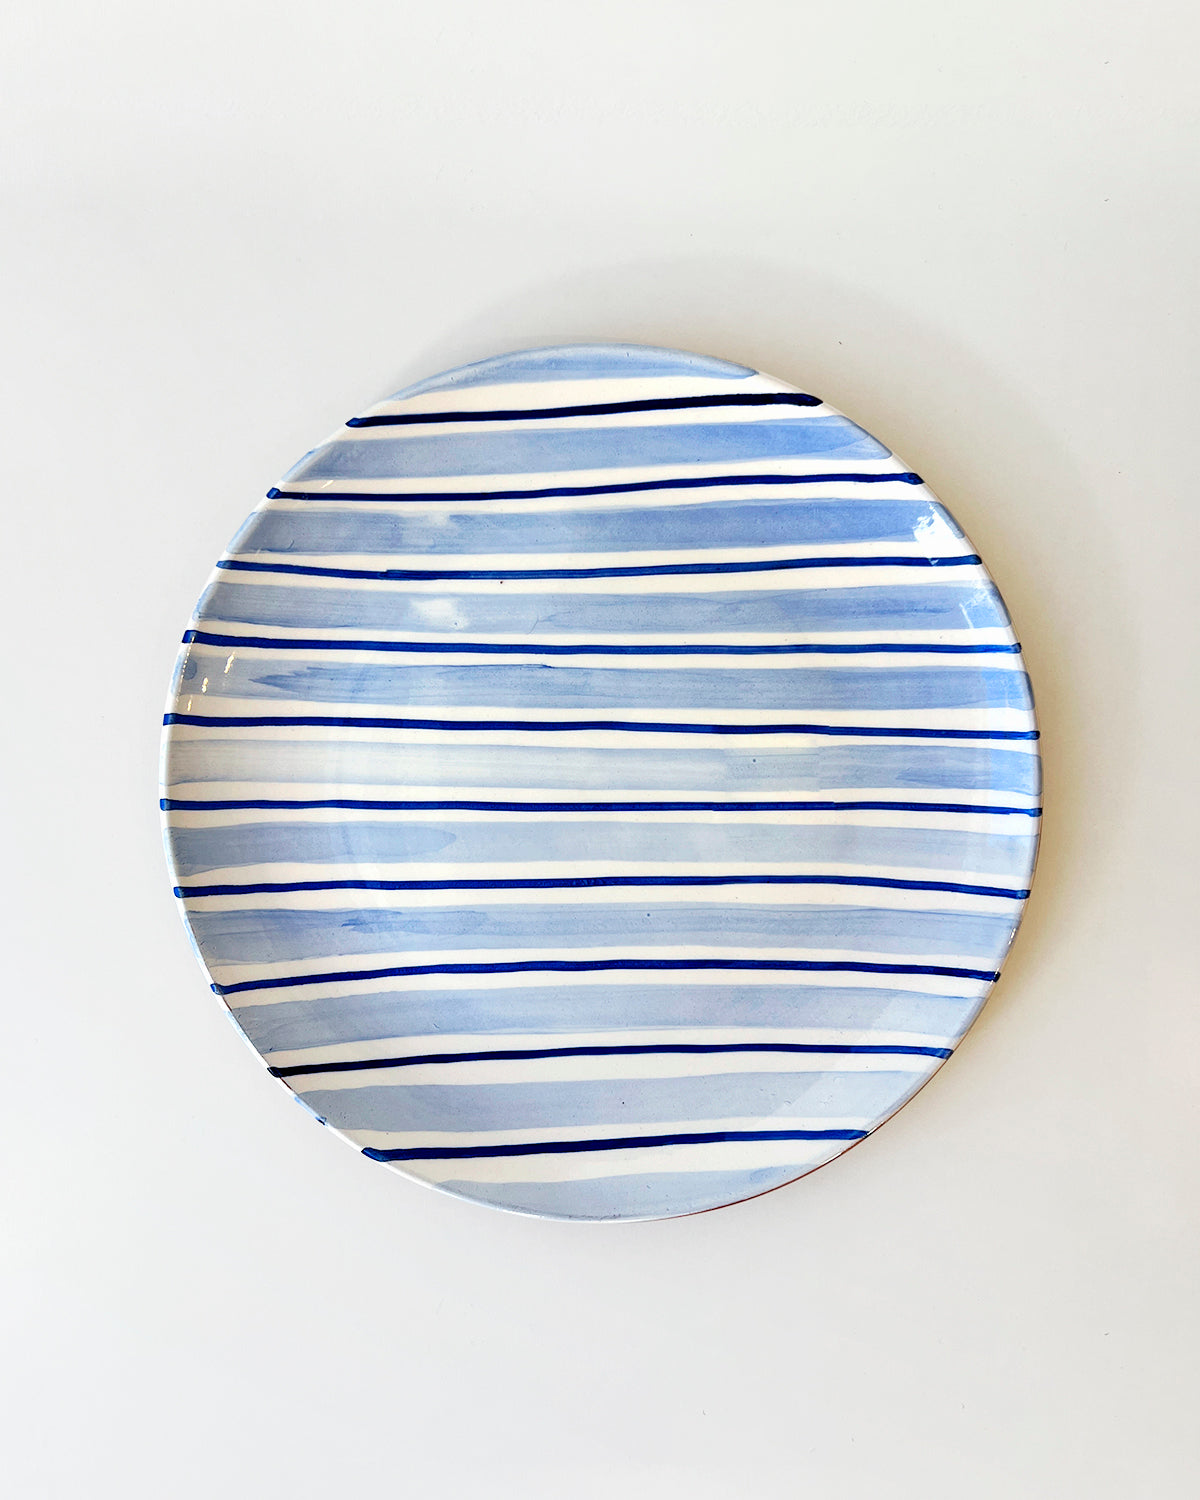 Casa Cubista Cabana Plates and Bowls - Blue